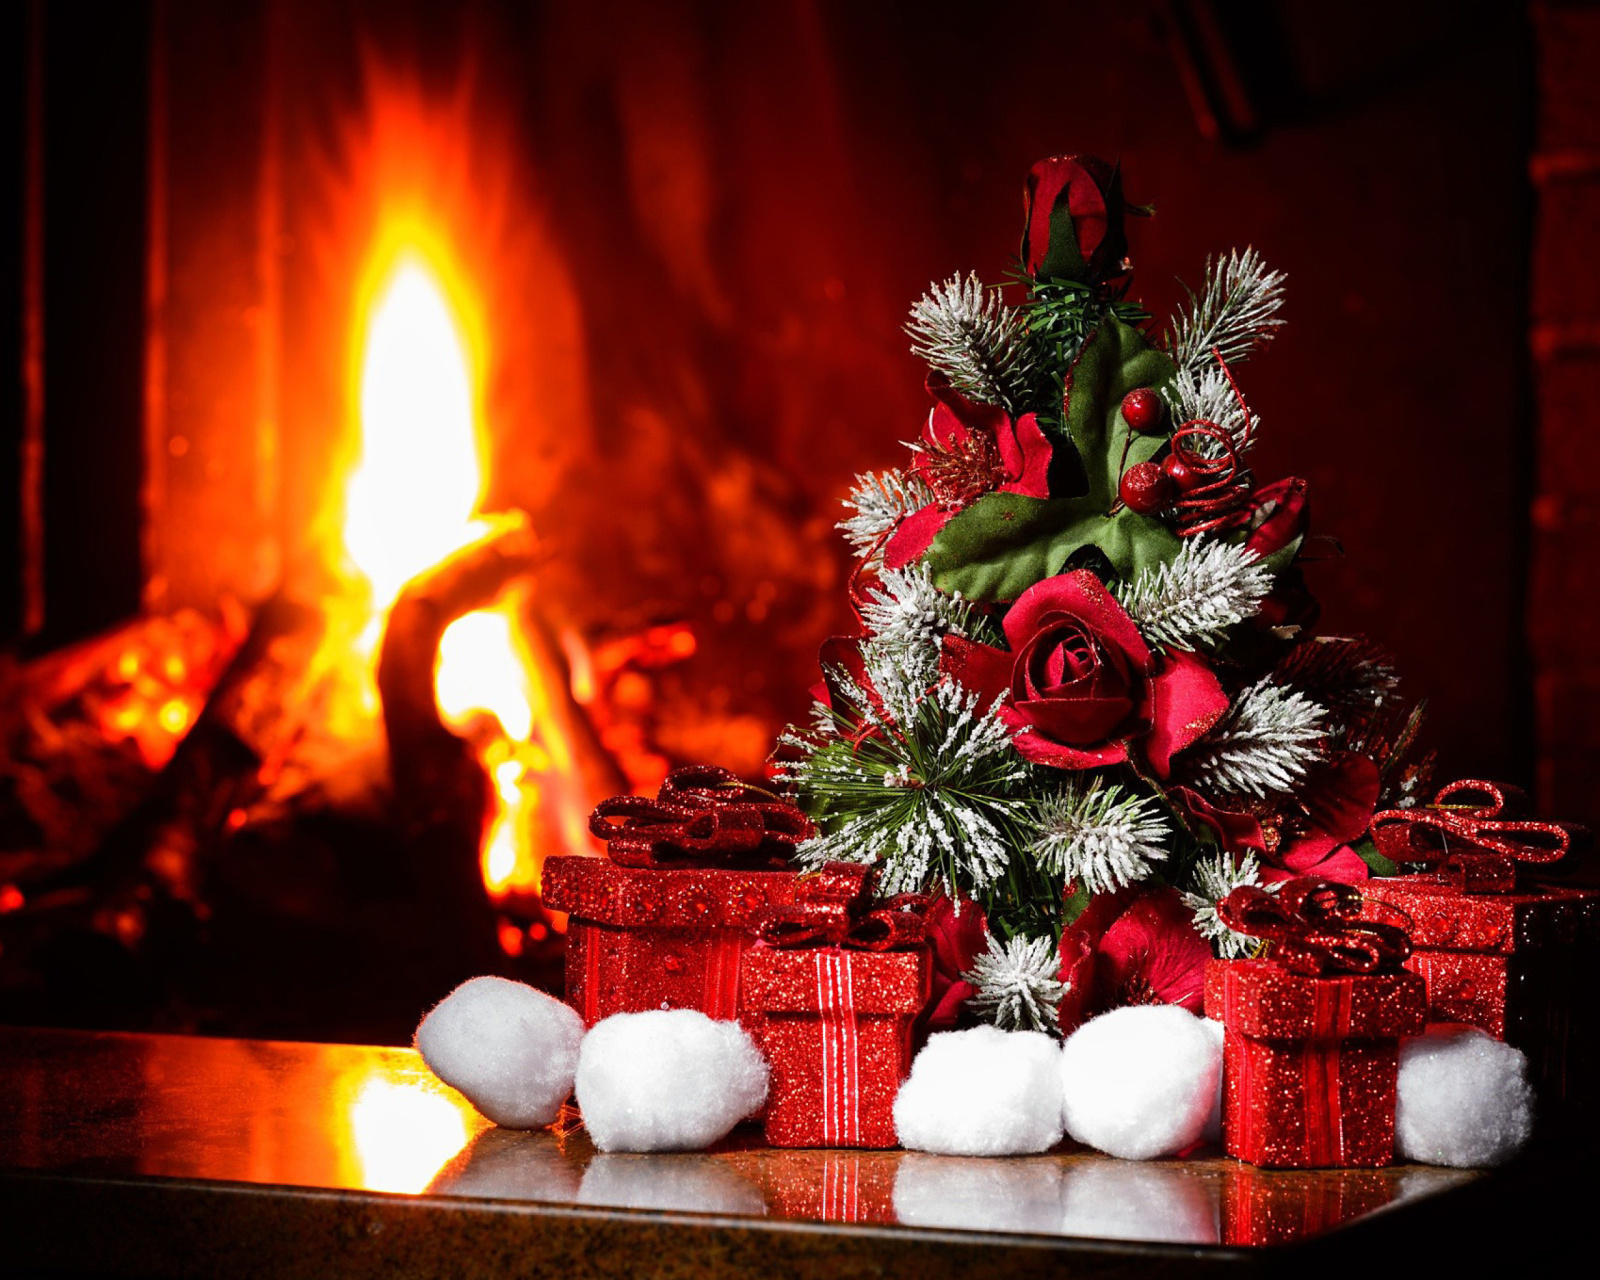 Das Christmas near Fireplace Wallpaper 1600x1280